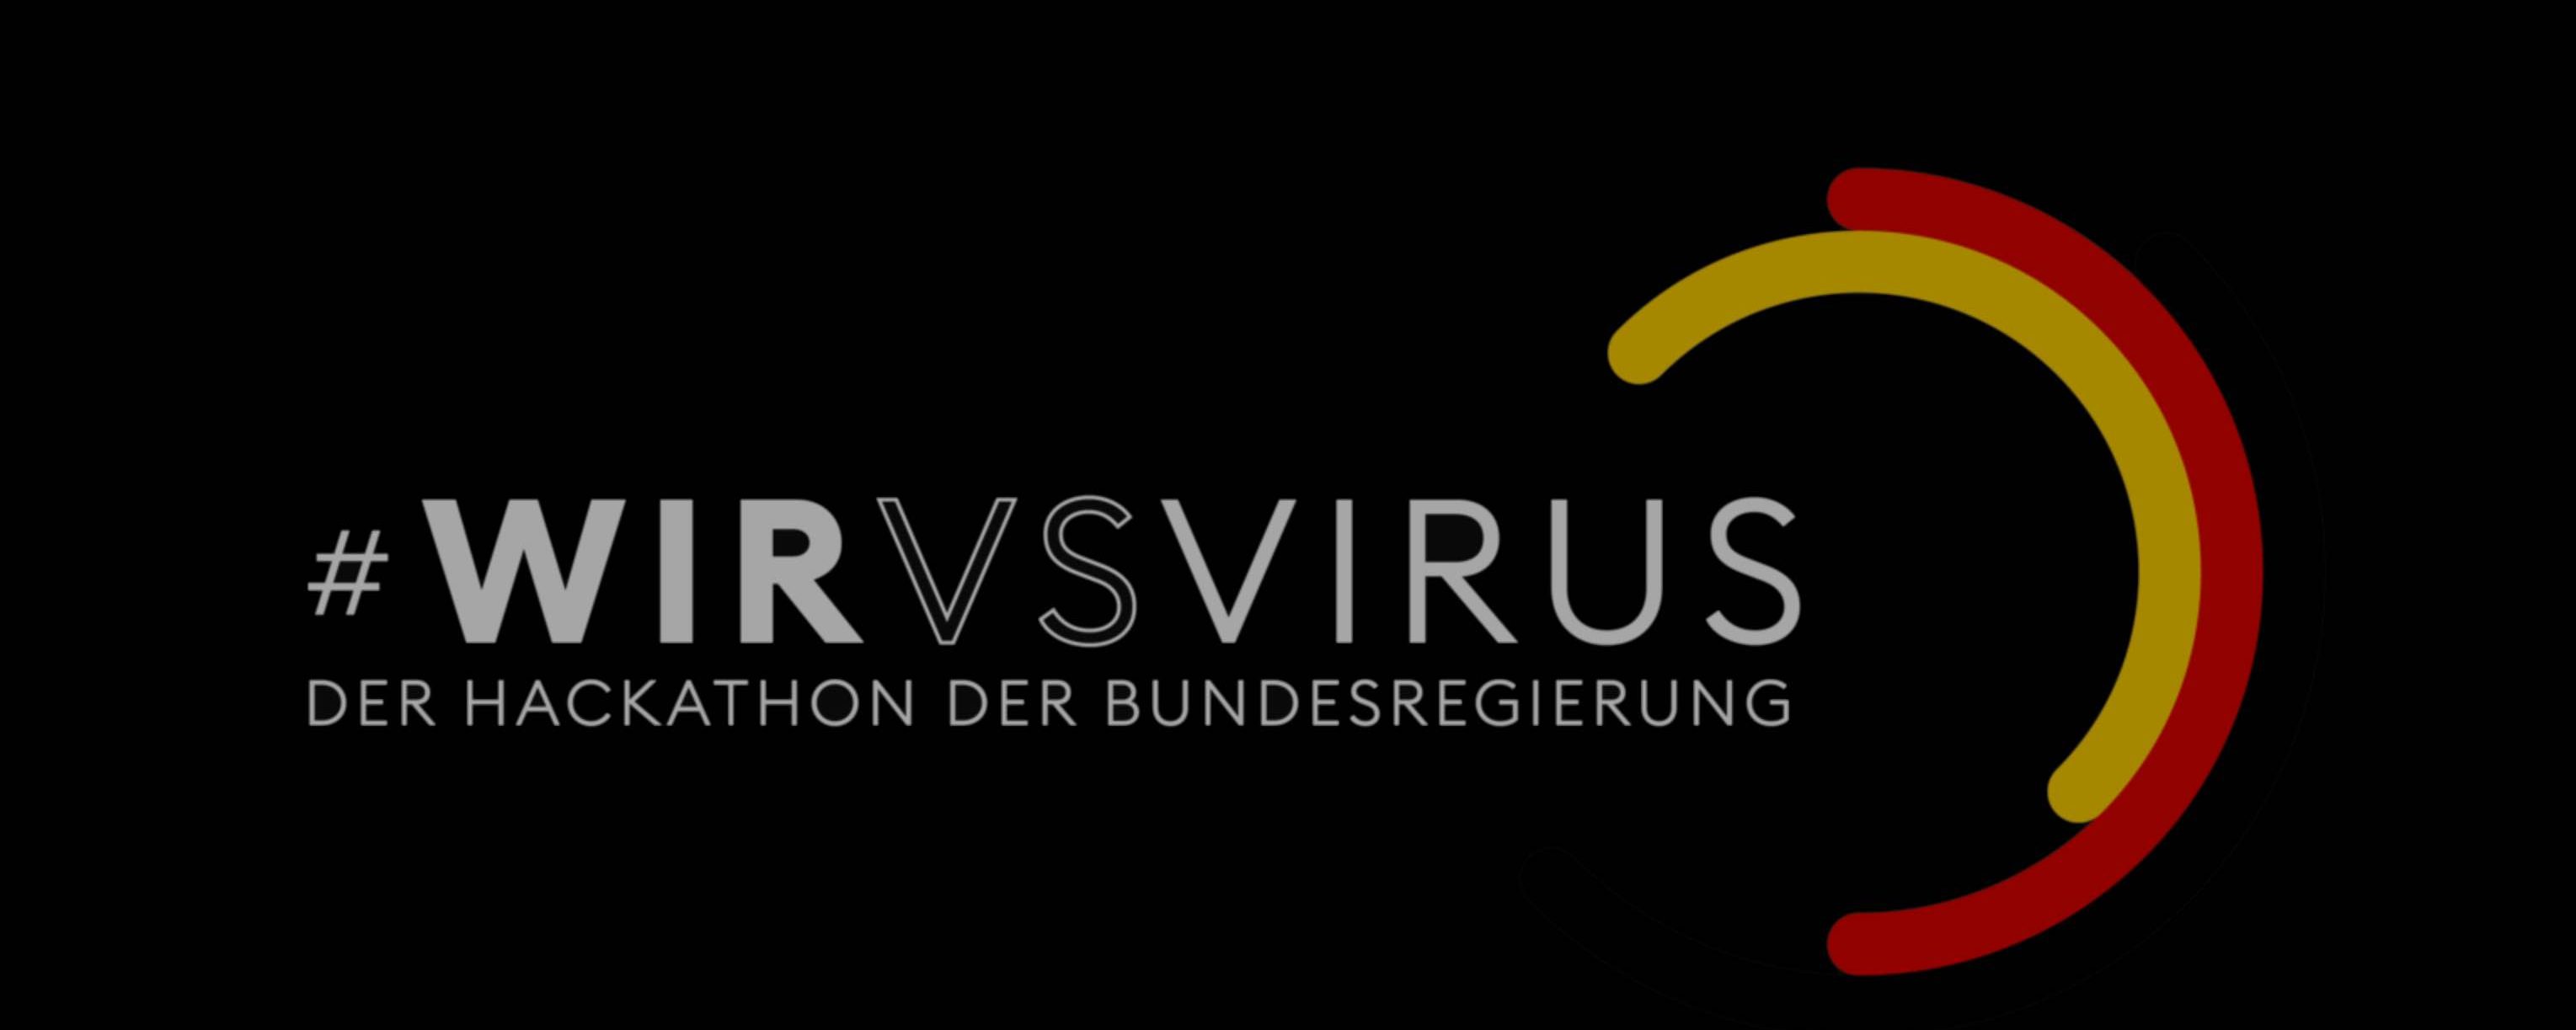 #WirvsVirus: Projekteinreichungen